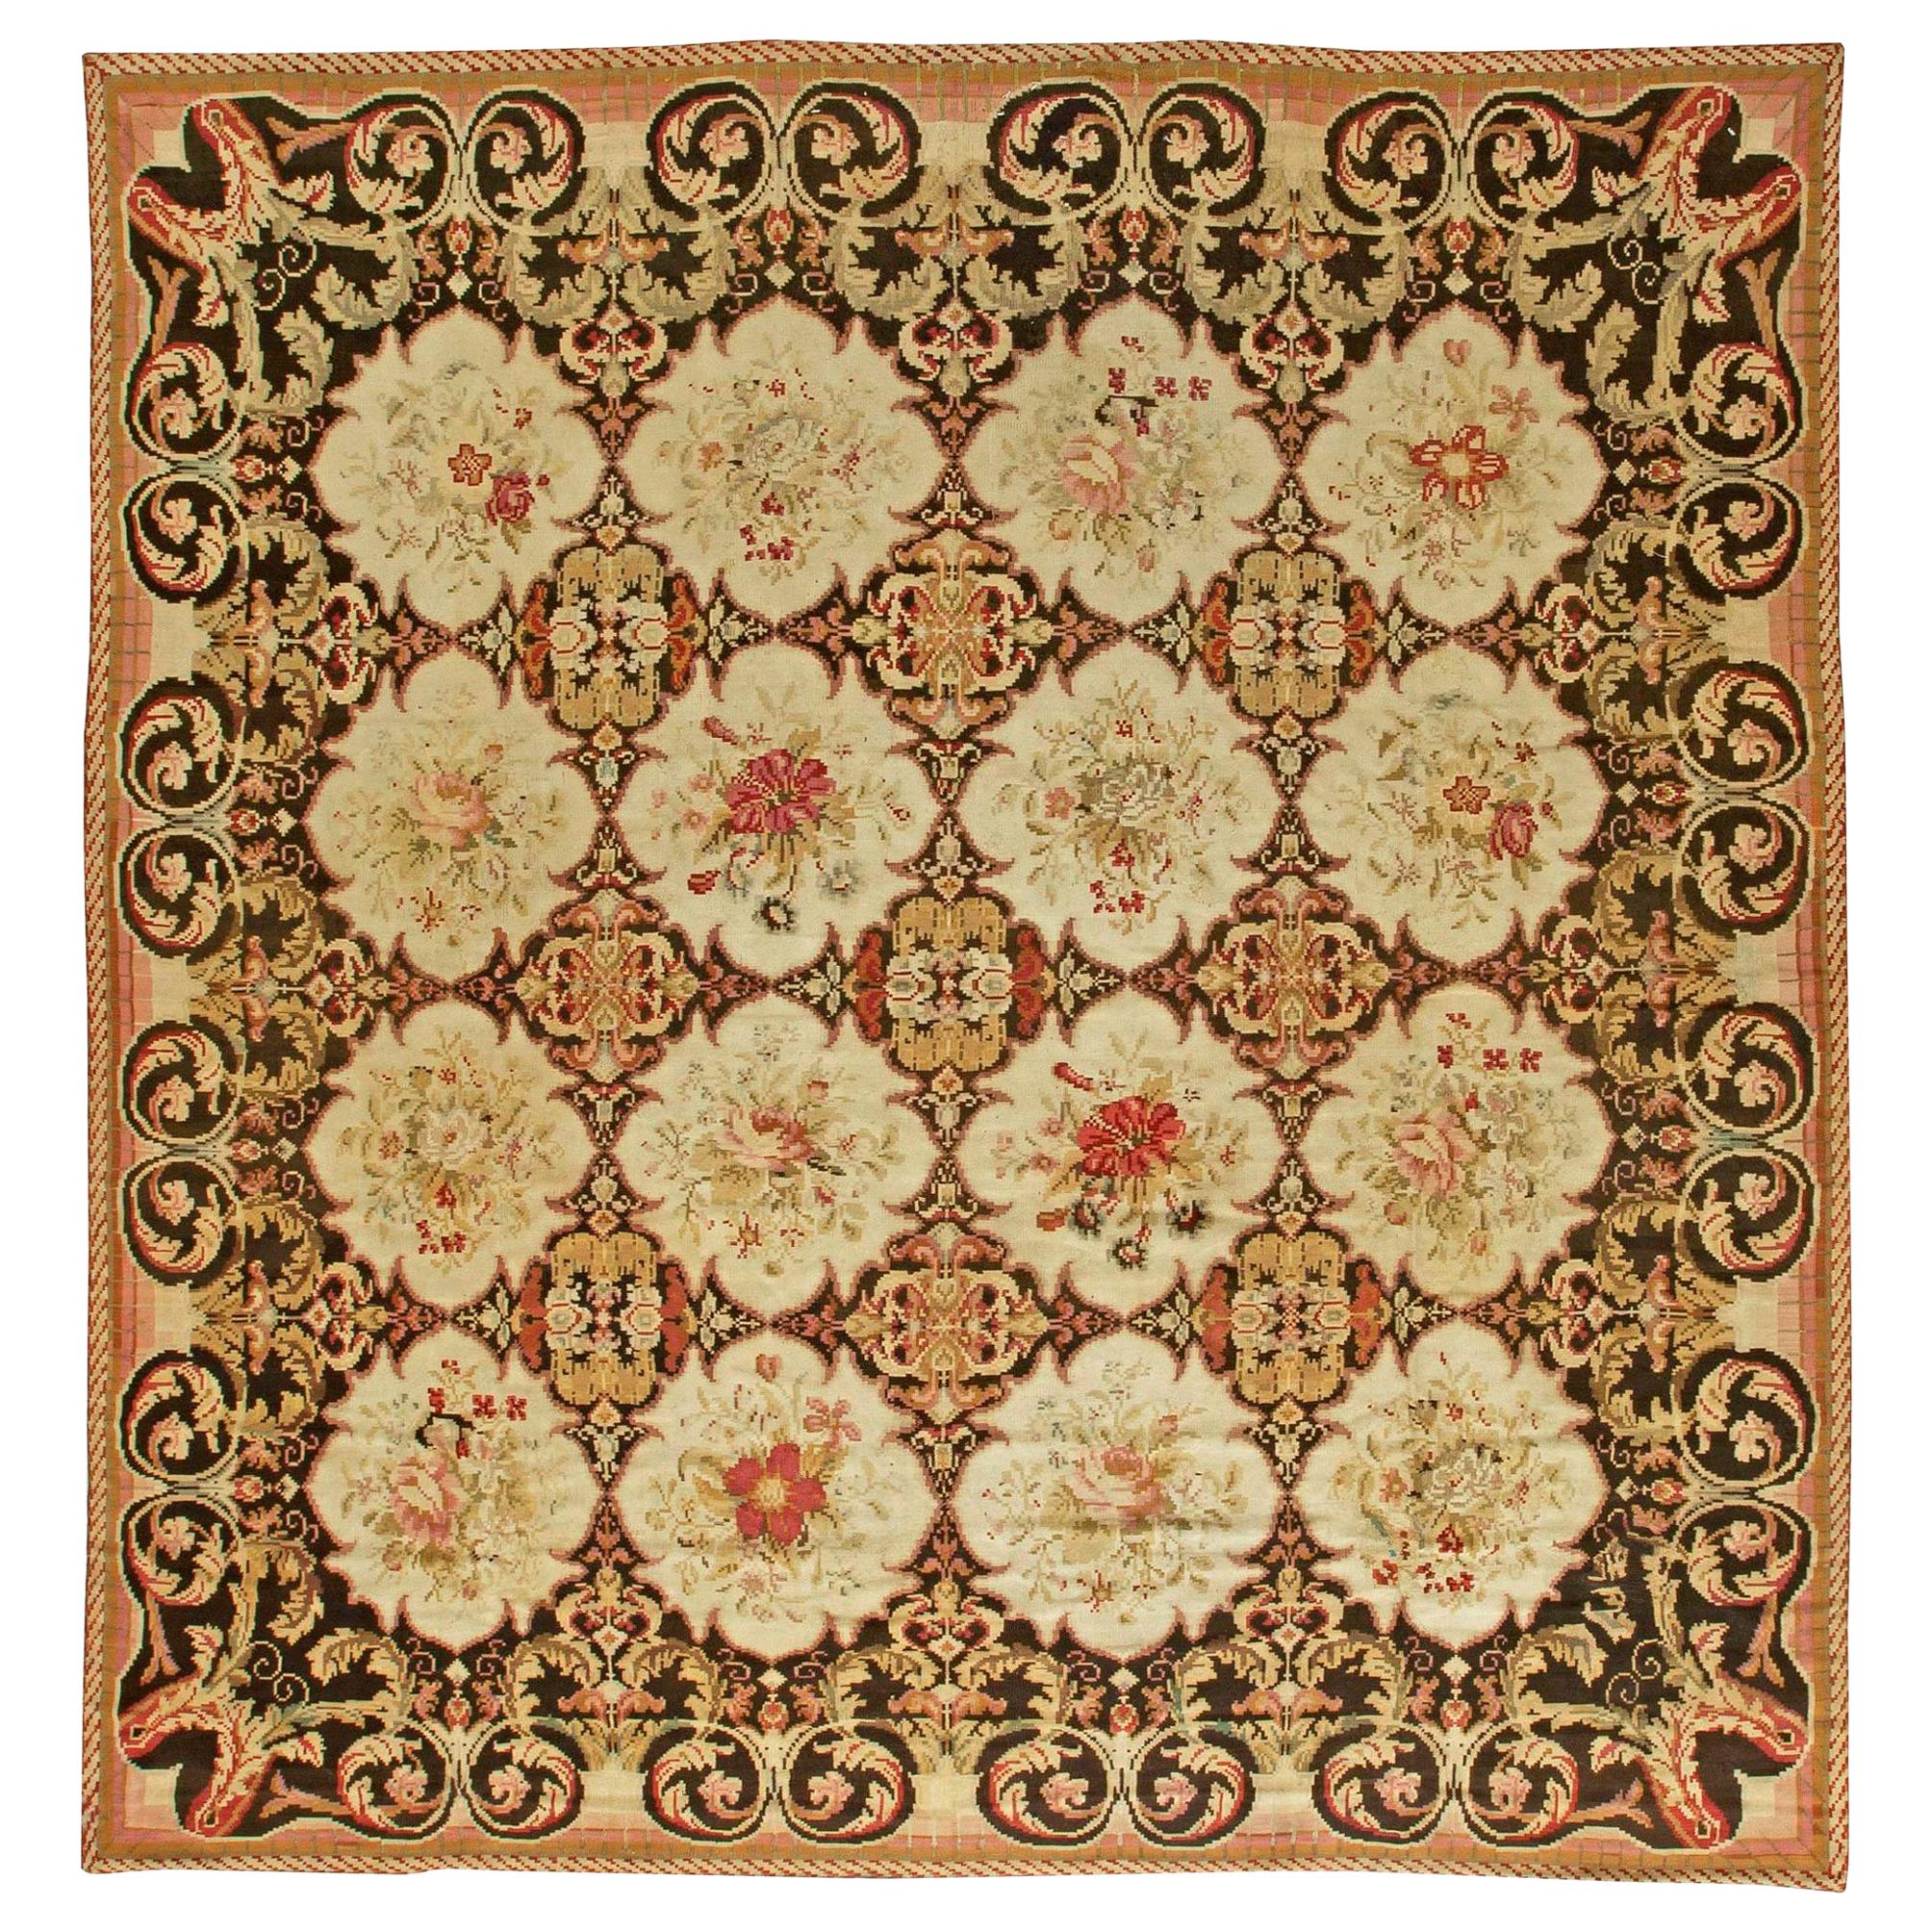 Authentic 19th Century Bessarabian Handmade Rug